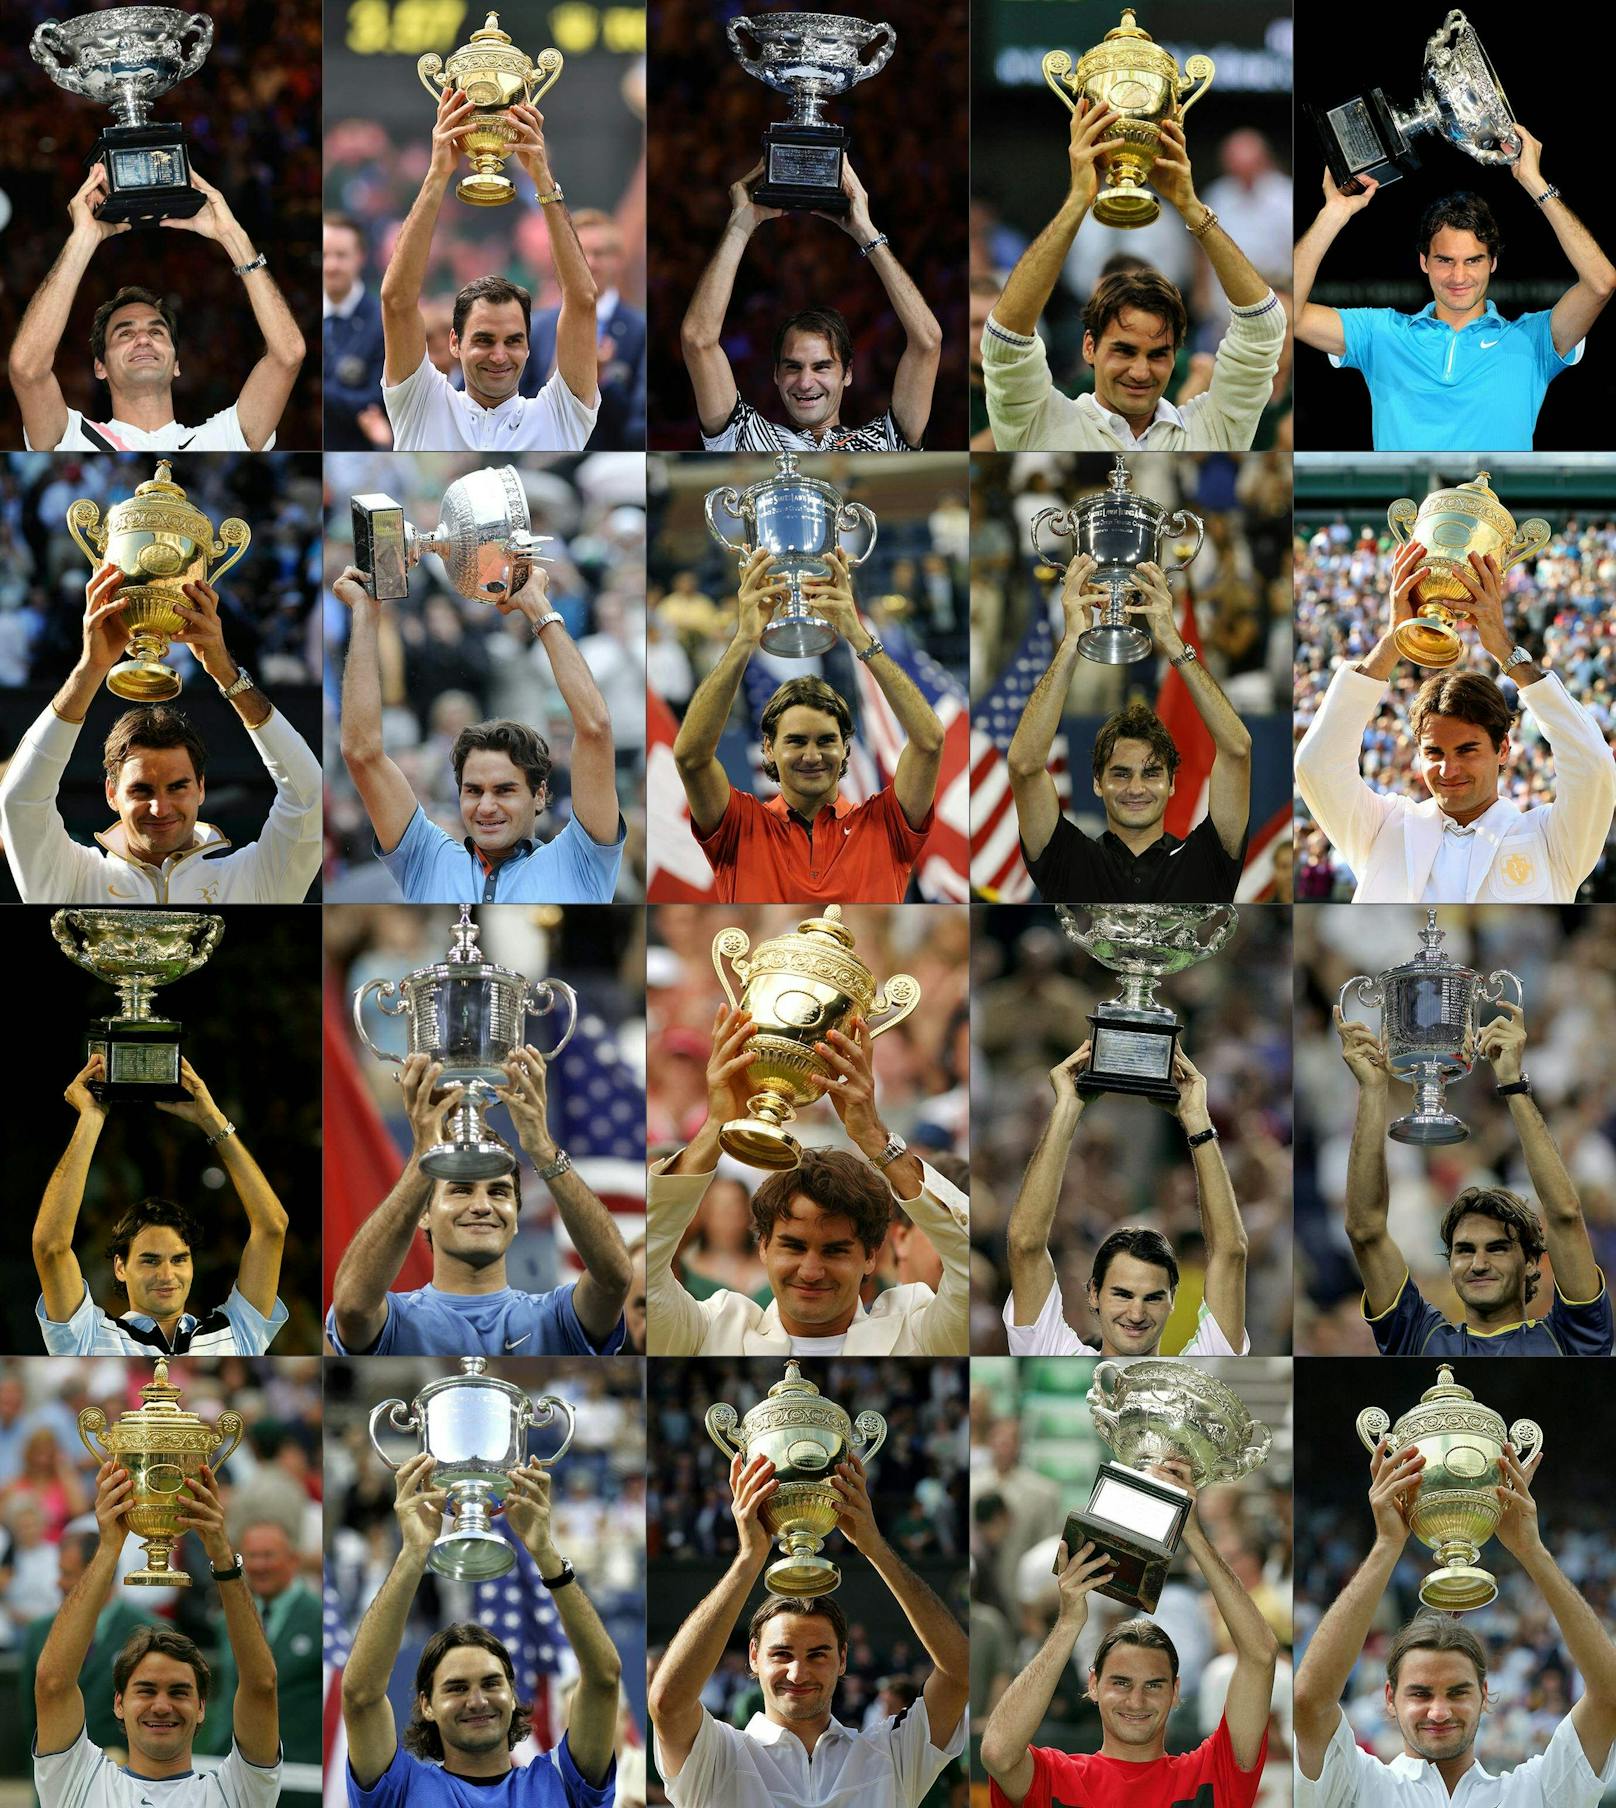 Federer gewann 20 Grand-Slam-Turniere. Nur Rafael Nadal (22) und Novak Djokovic (21) haben noch mehr Major-Titel. In Wimbledon ist der Schweizer mit unglaublichen acht Titeln alleiniger Rekordhalter. Zum ersten Mal triumphierte Federer 2003 am heiligen Rasen, zuletzt 2017 - 2018 gewann der Superstar die Australien Open.